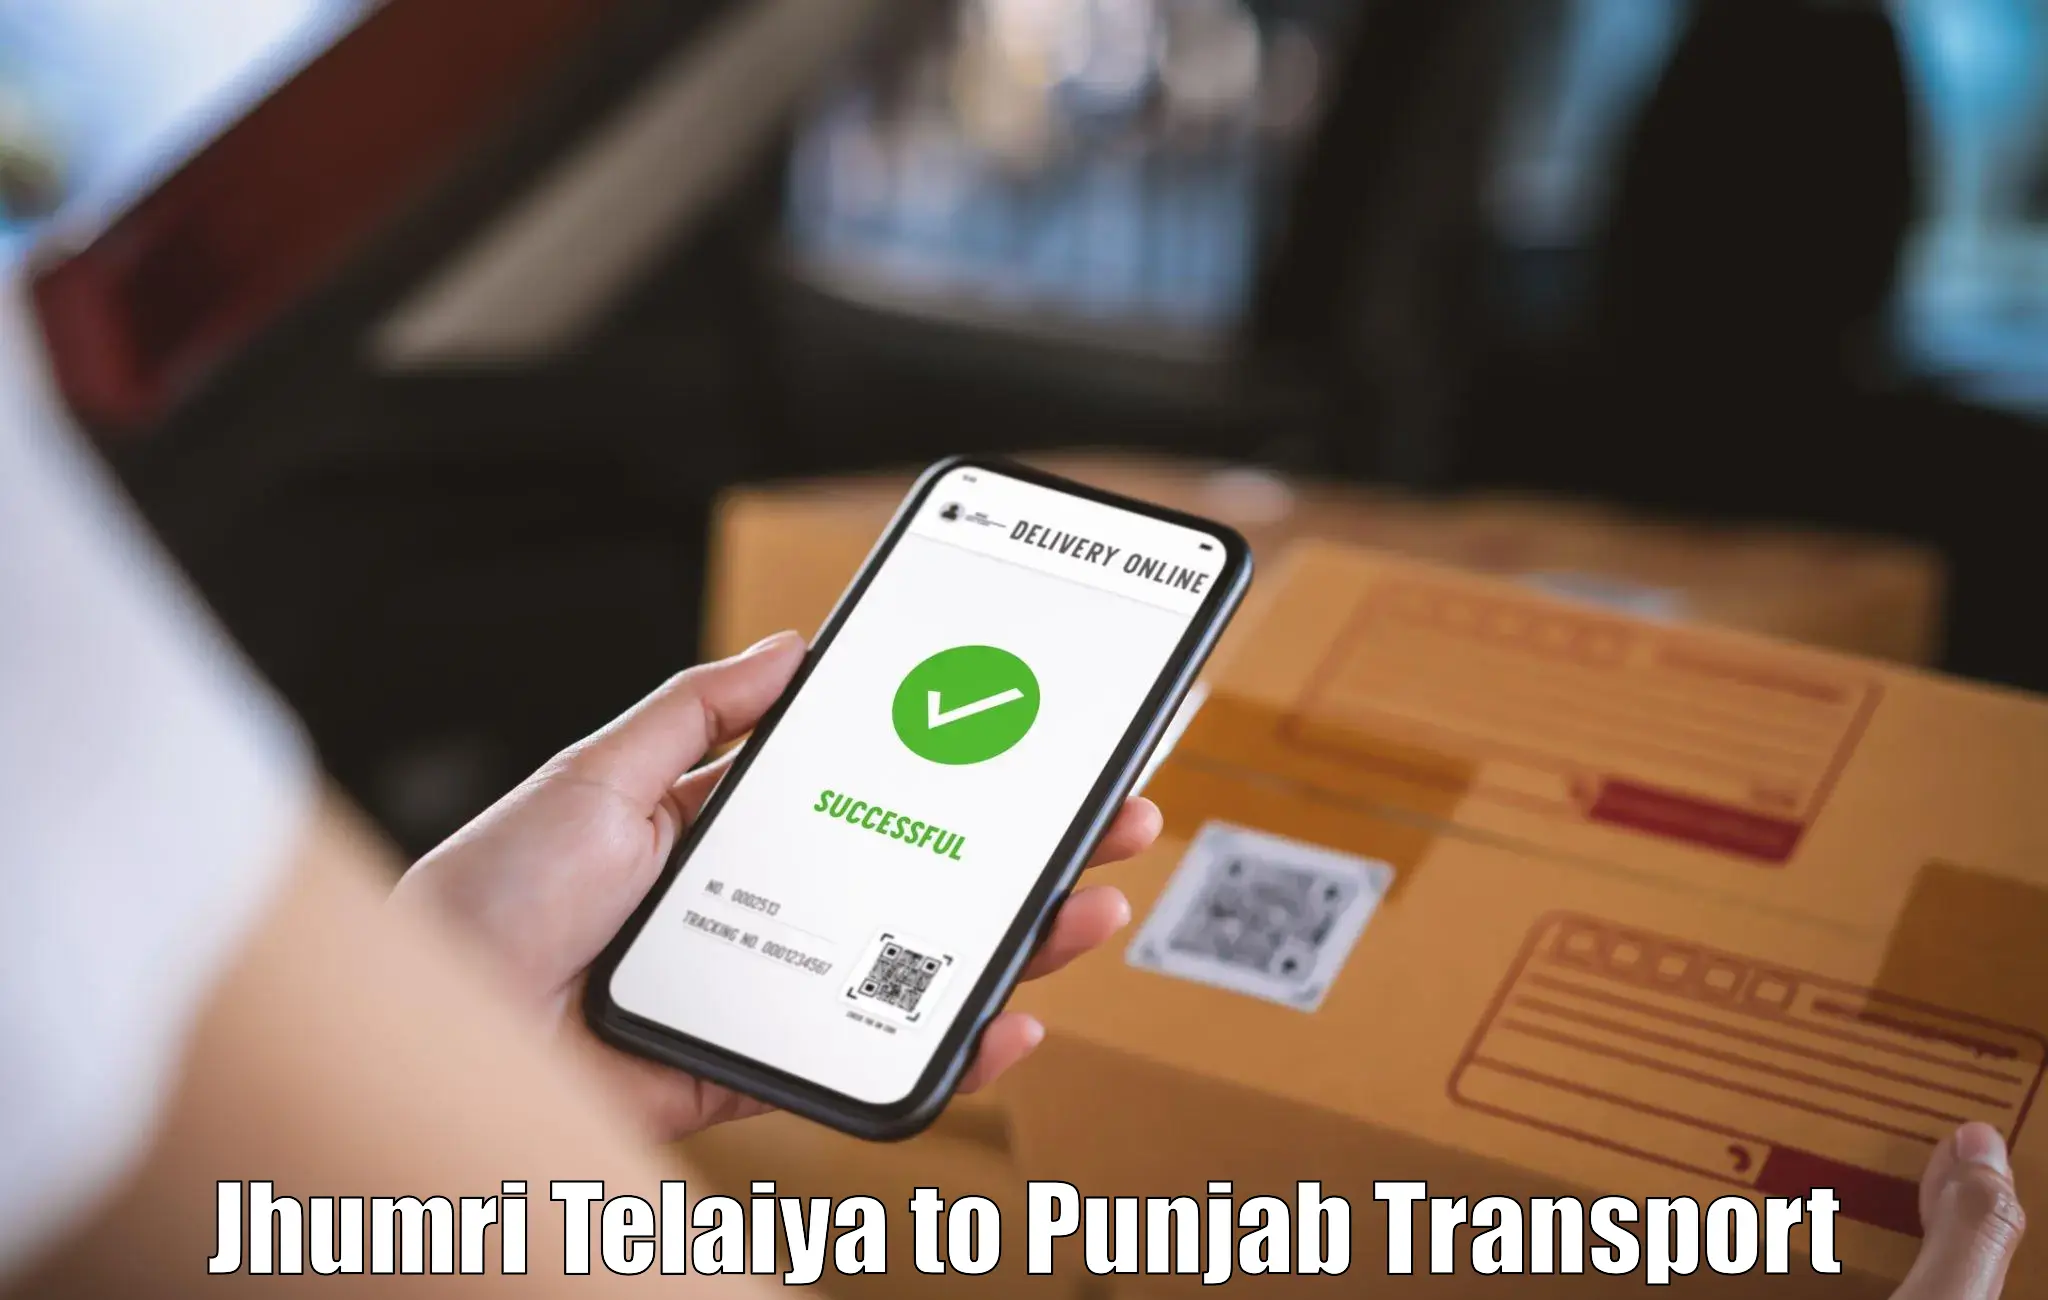 Cargo train transport services Jhumri Telaiya to Tarn Taran Sahib